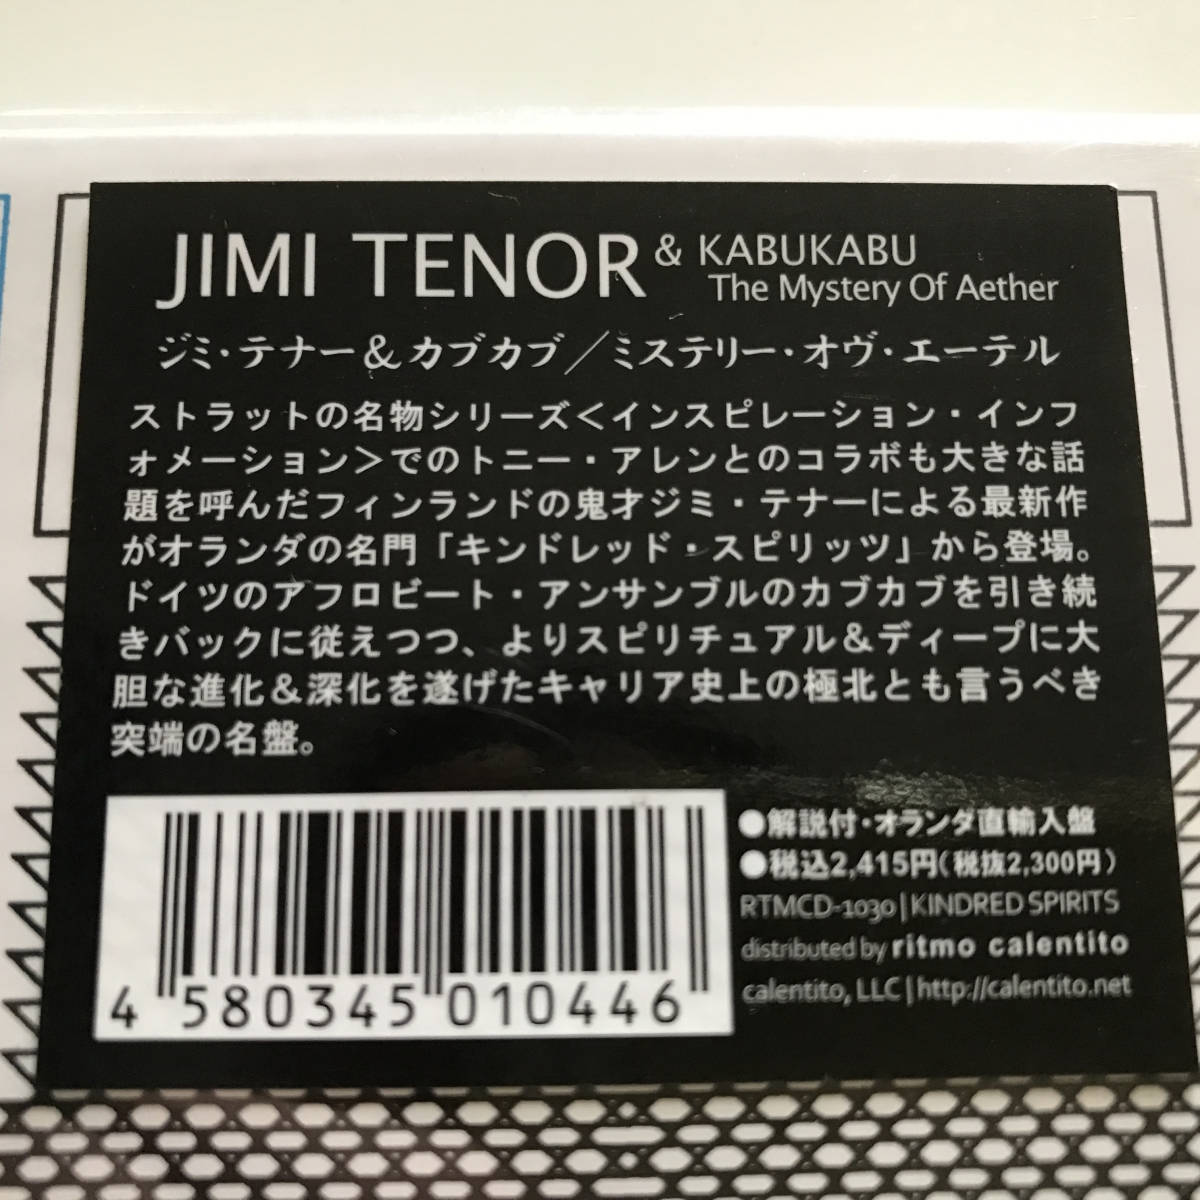 中古CD Jimi Tenor ジミ・テナー Kabu Kabu カブカブ The Mystery Of Aether ミステリー・オブ・エーテル RTMCD-1030 アフロ テクノジャズ